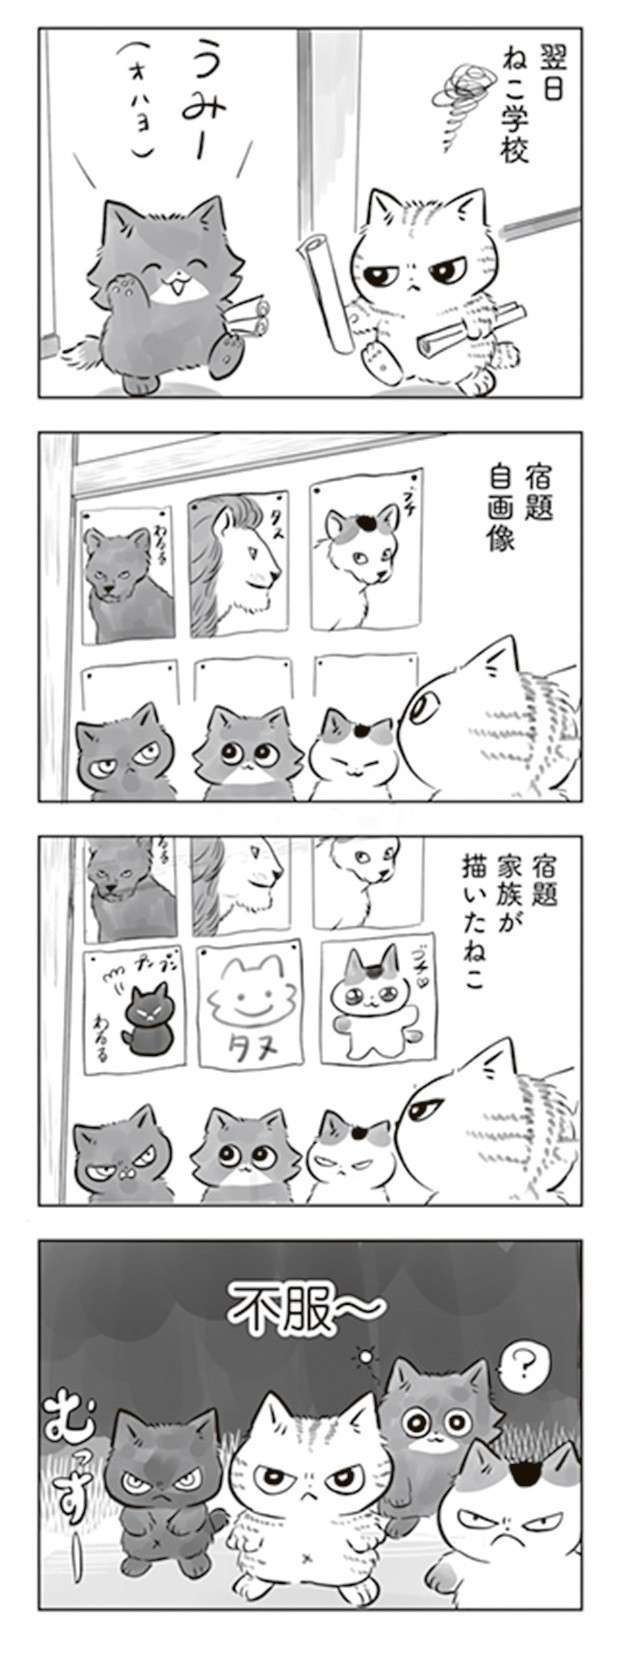 軒下で生まれ保護された子猫。里親が見つかったがなかなかやんちゃで...／トラと陽子 tora_yoko9-7.jpg